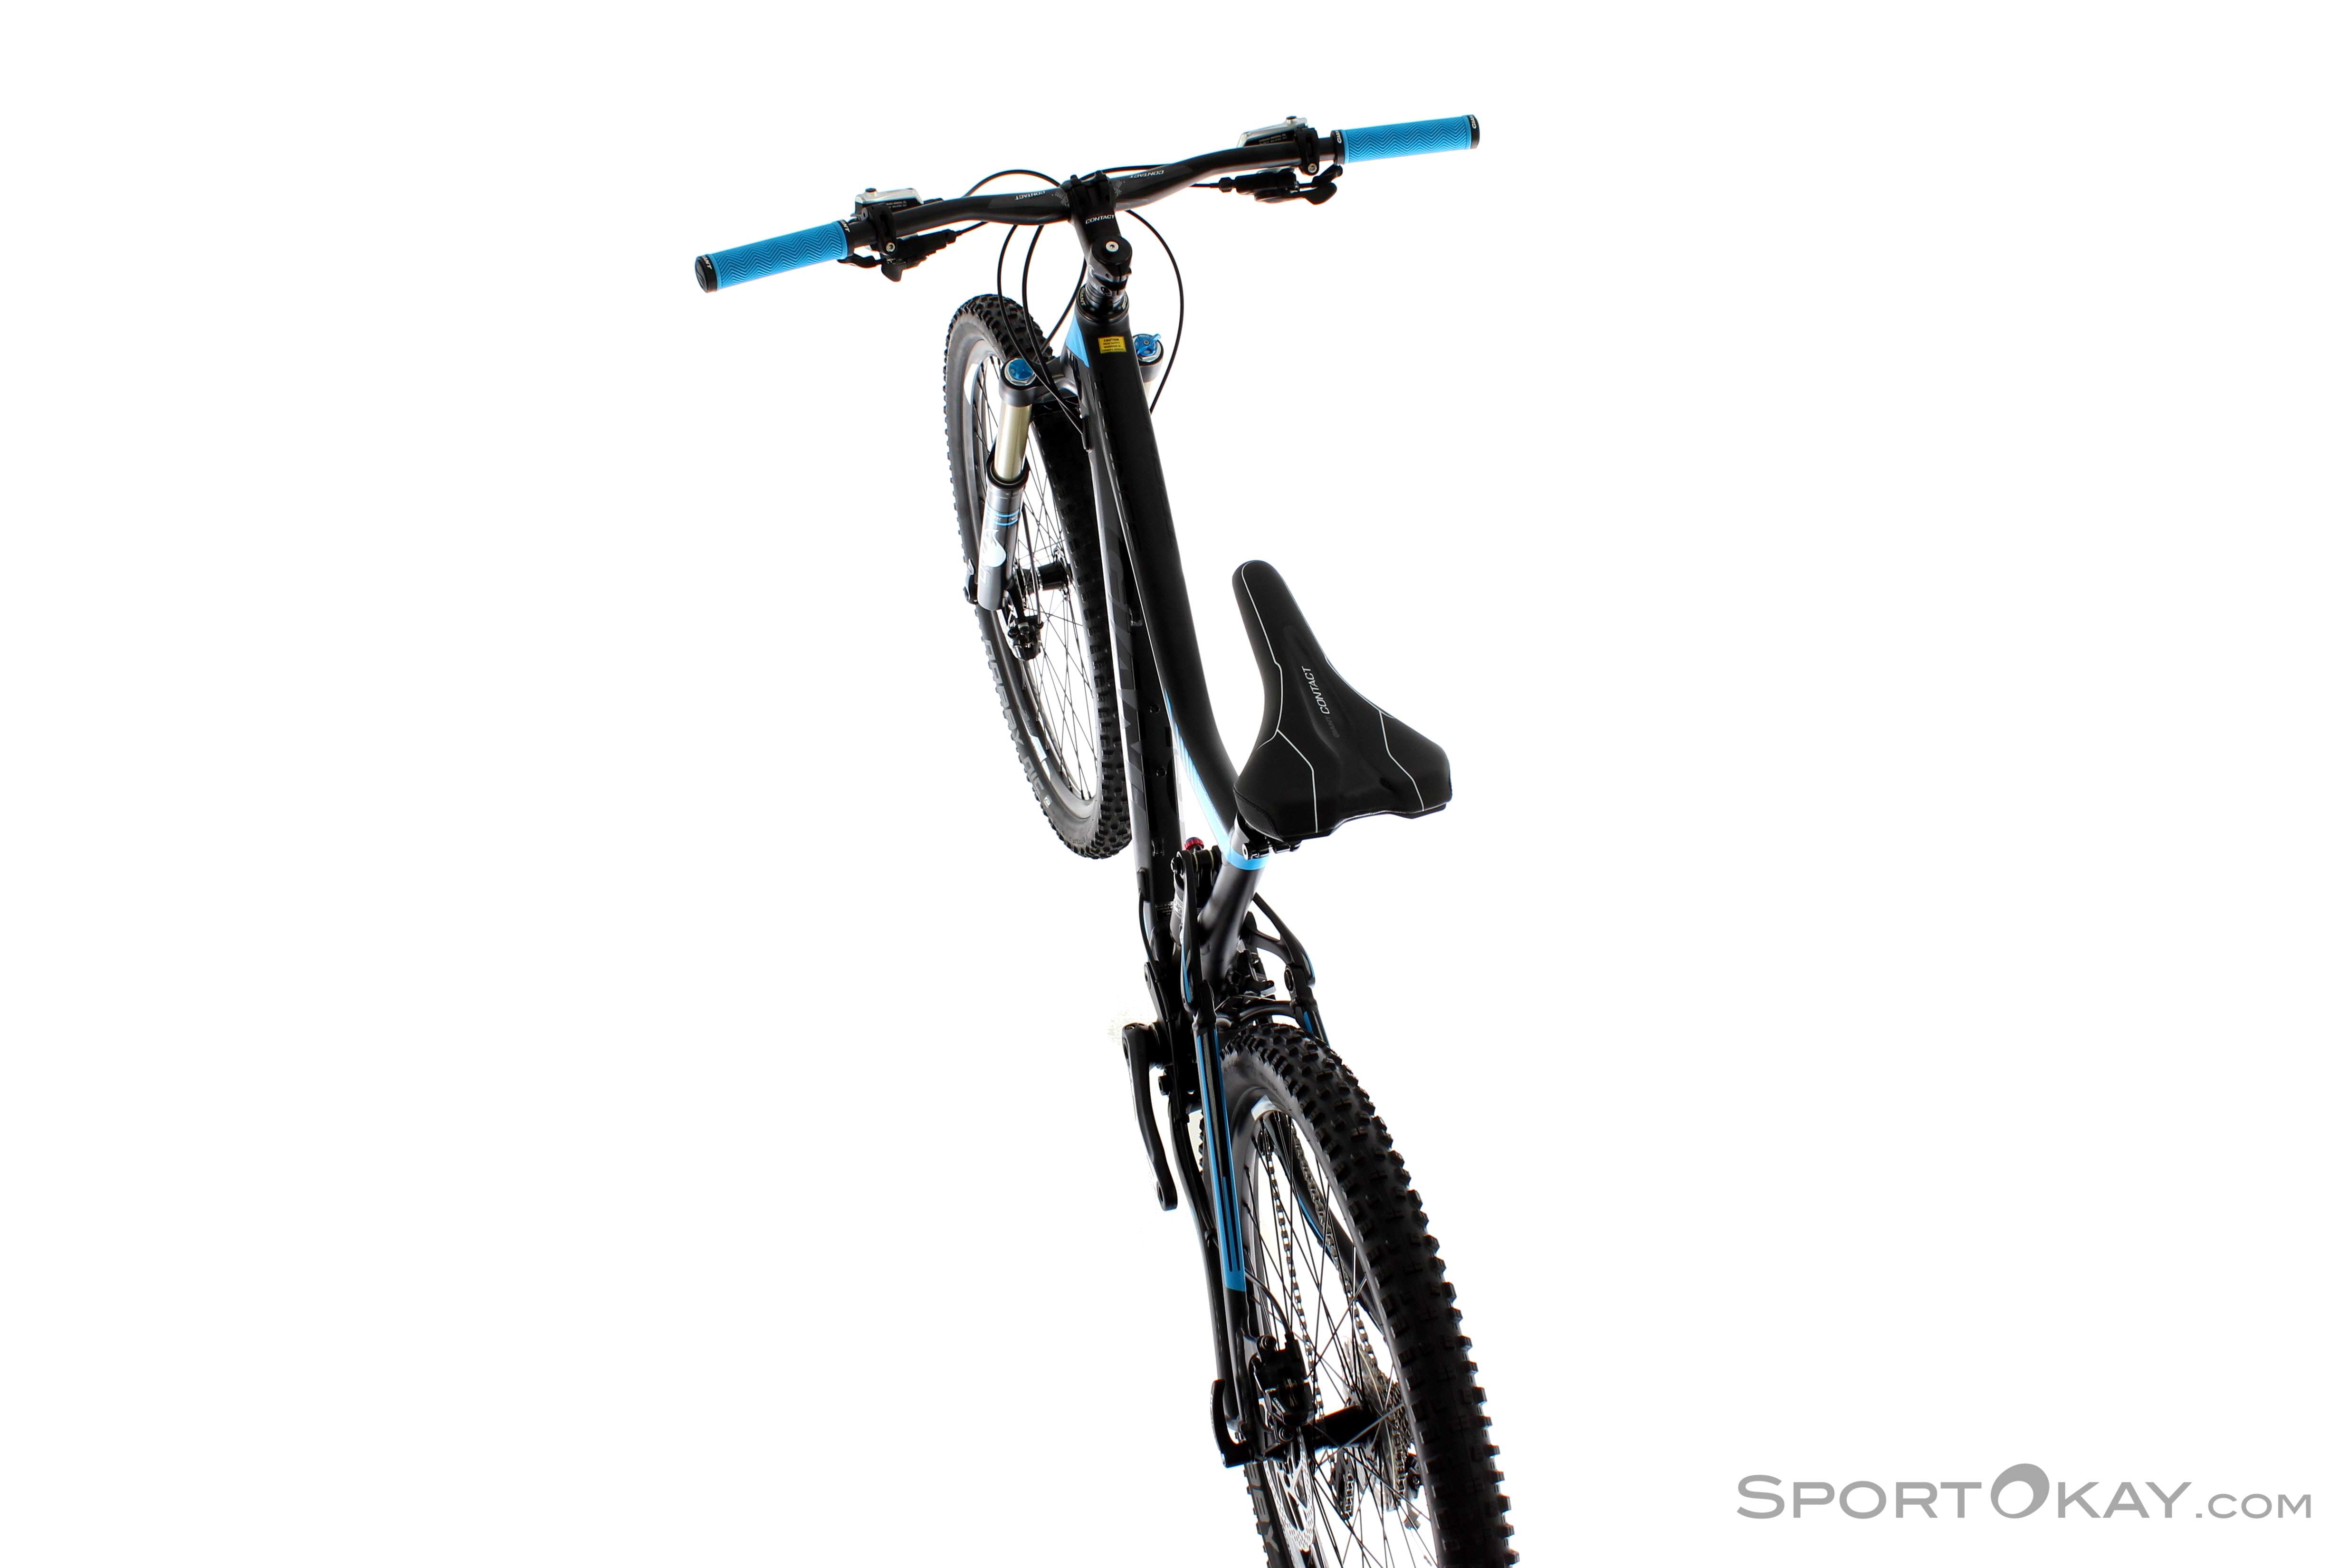 2 pièces vélo guidon glands accessoires extérieur cyclisme